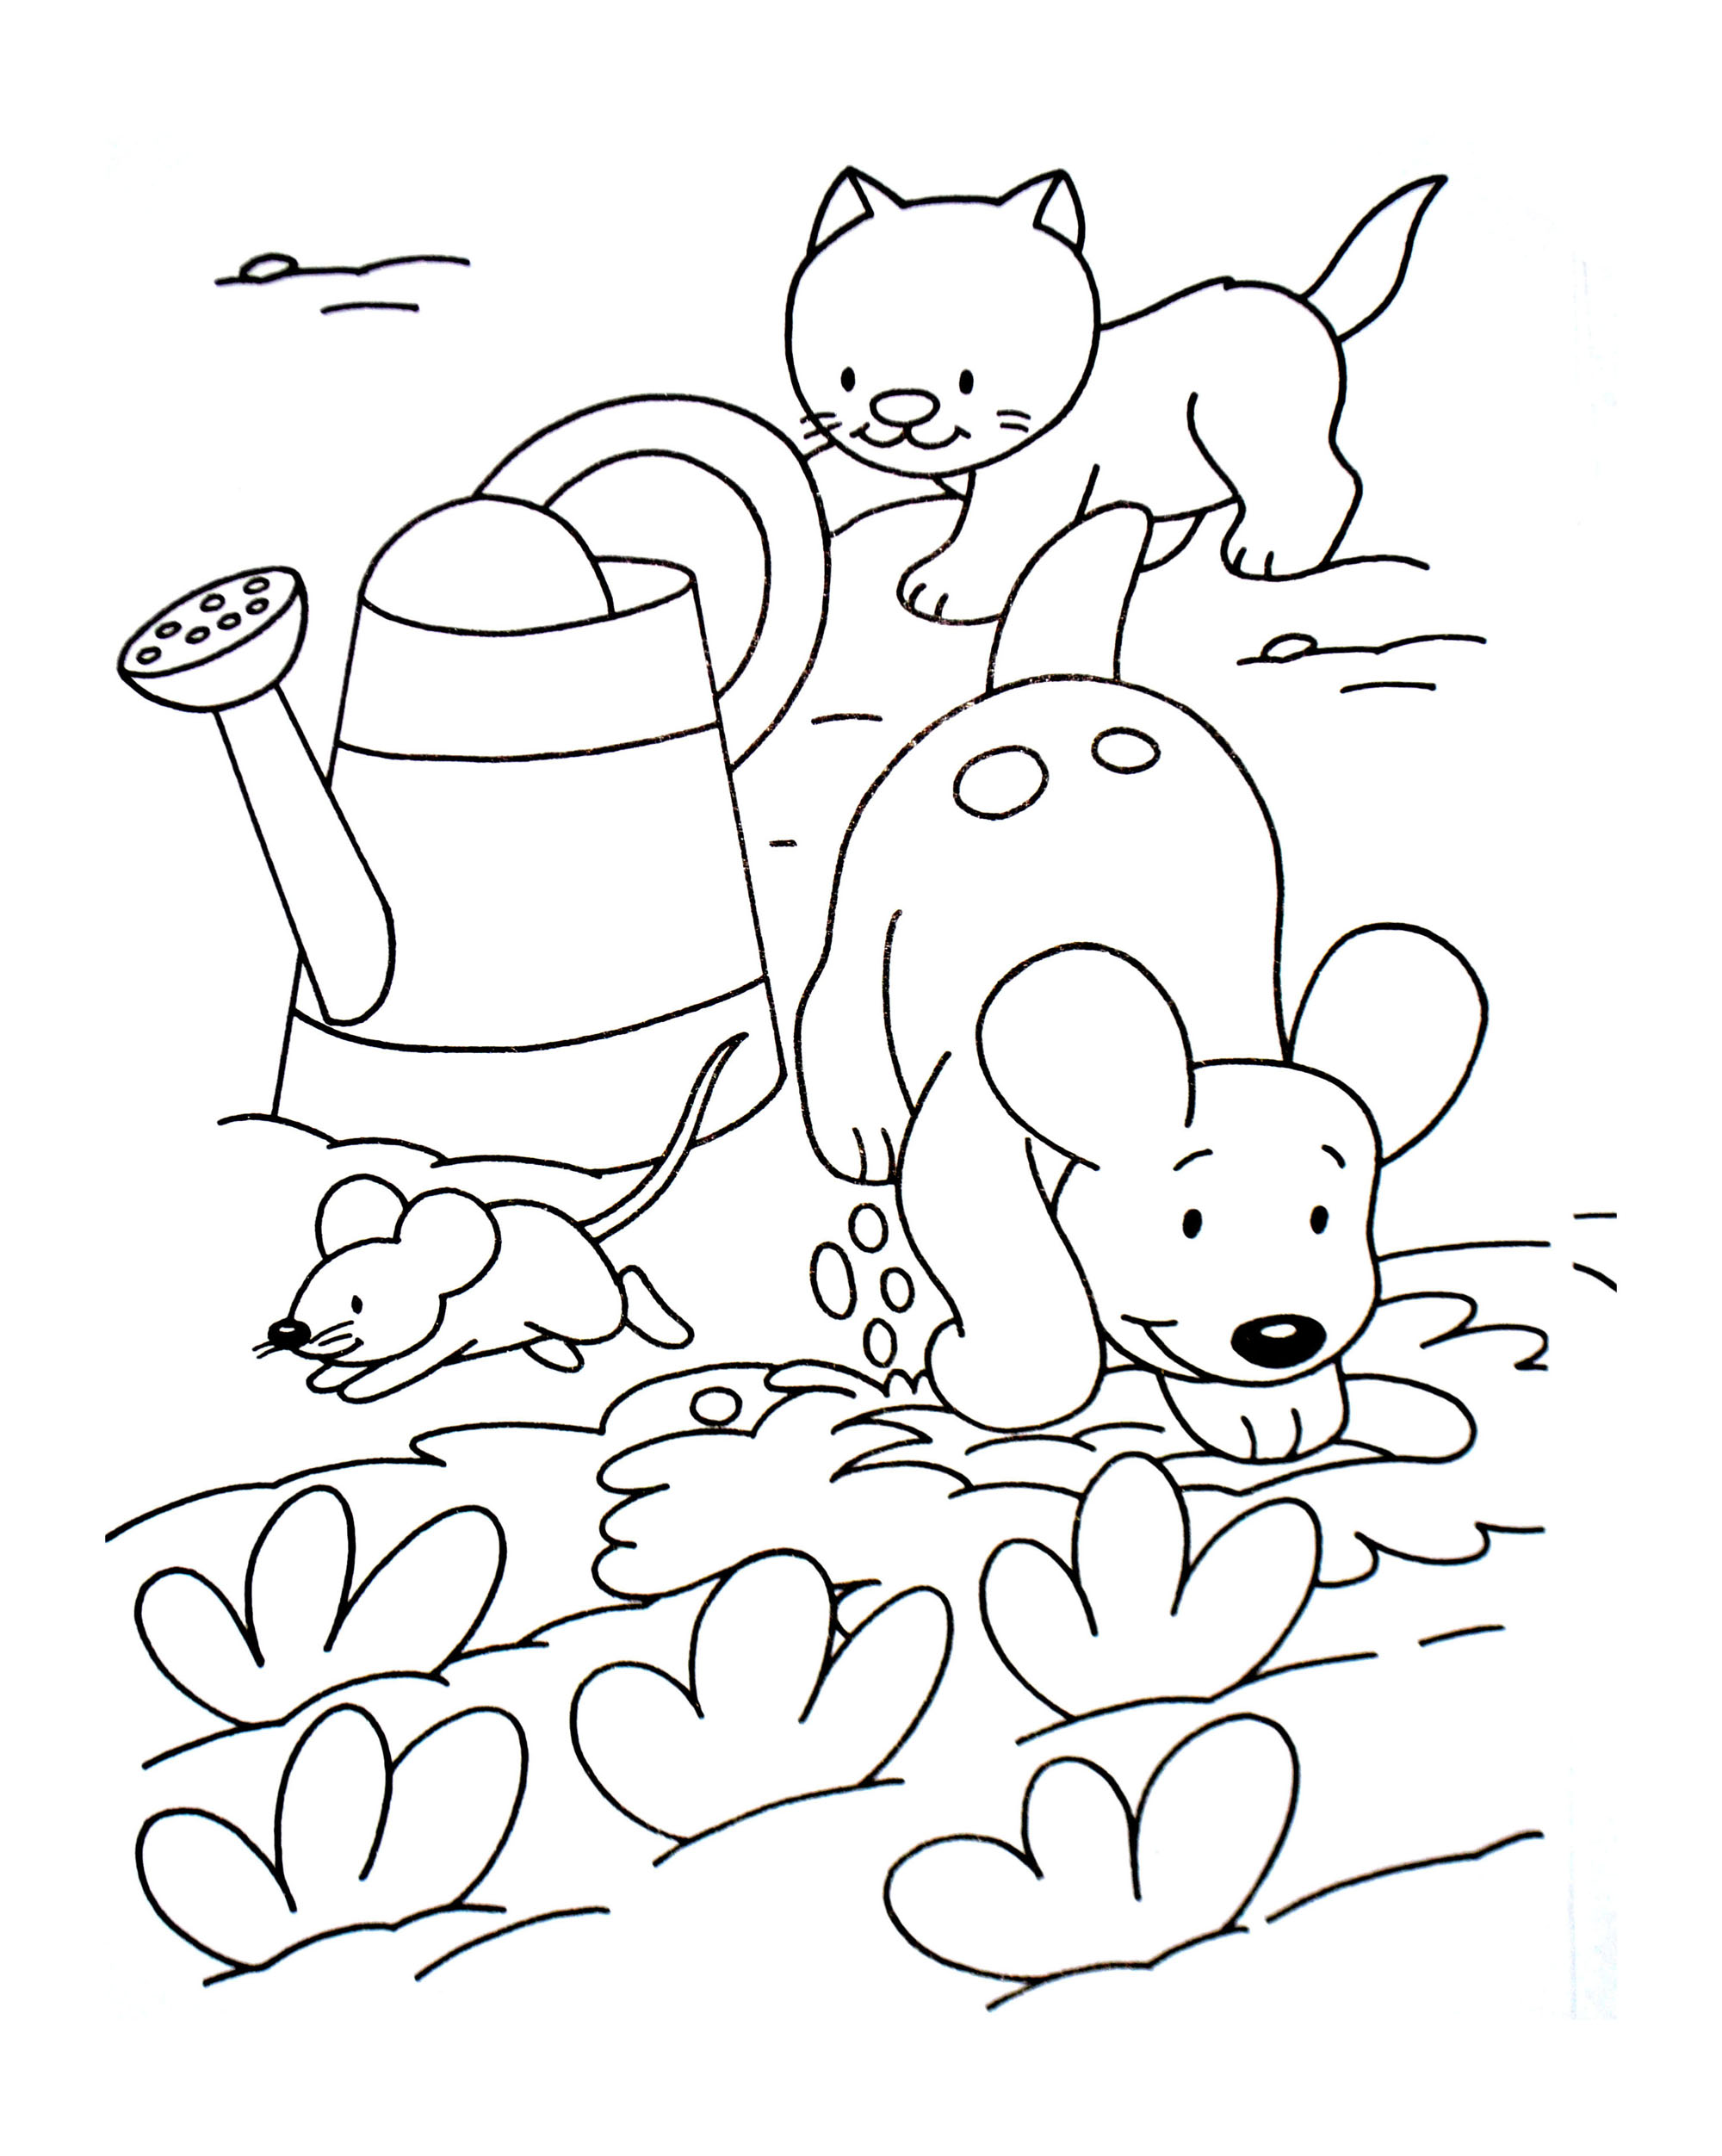 Dibujo de perro gratis para imprimir y colorear - Perros - Just Color Niños  : Dibujos para colorear para niños